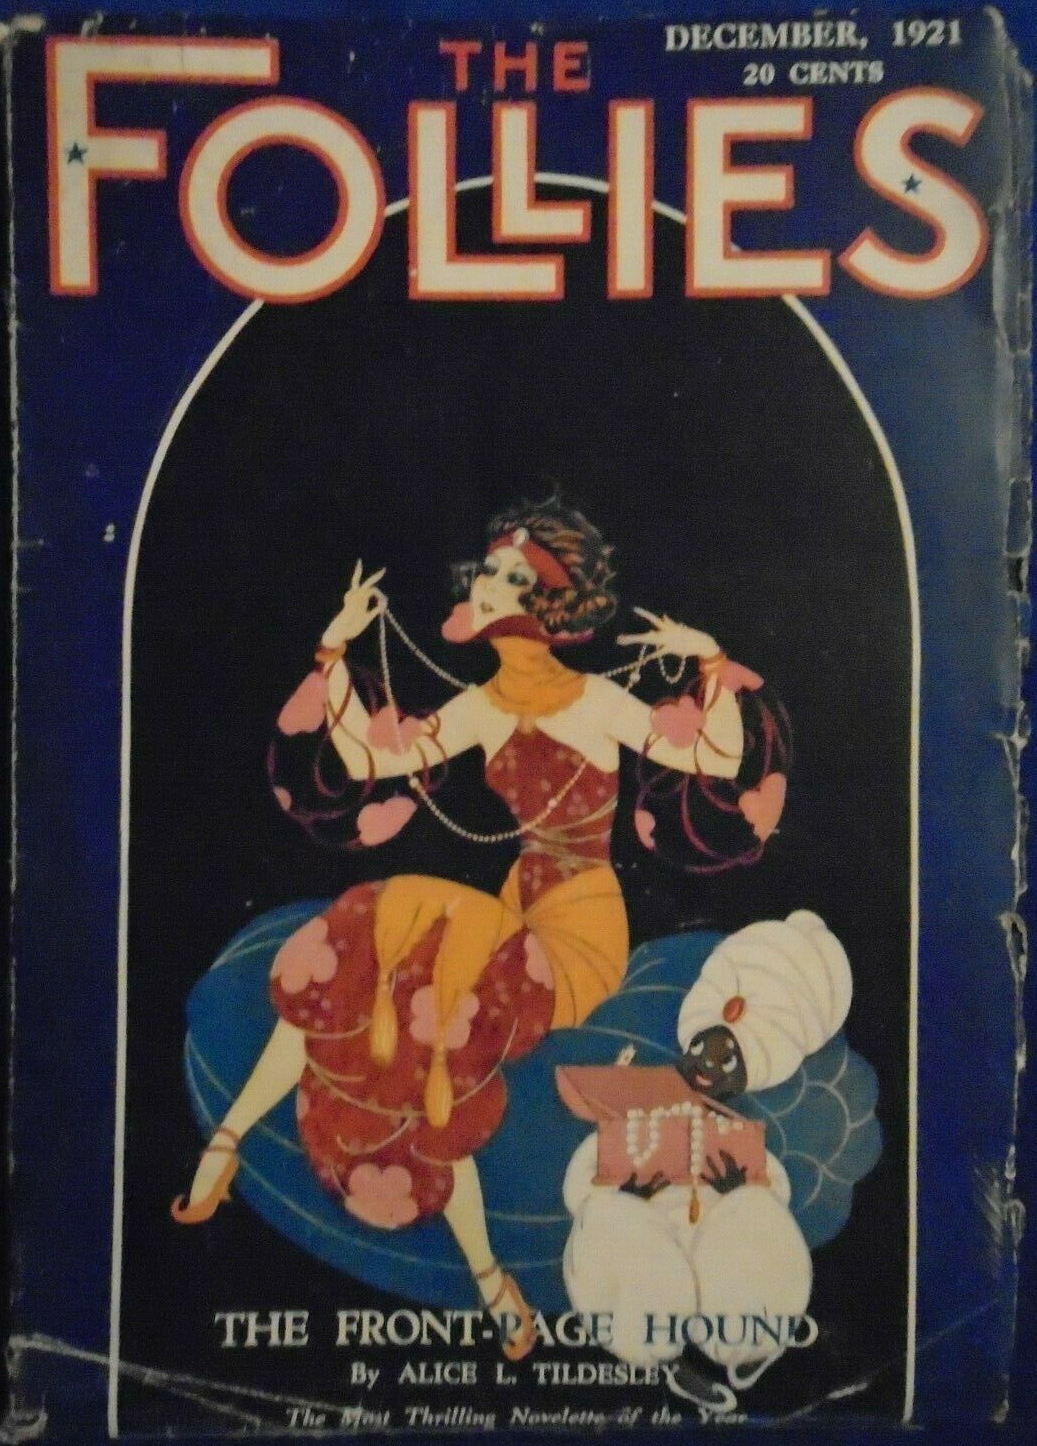 The Follies - December 1921